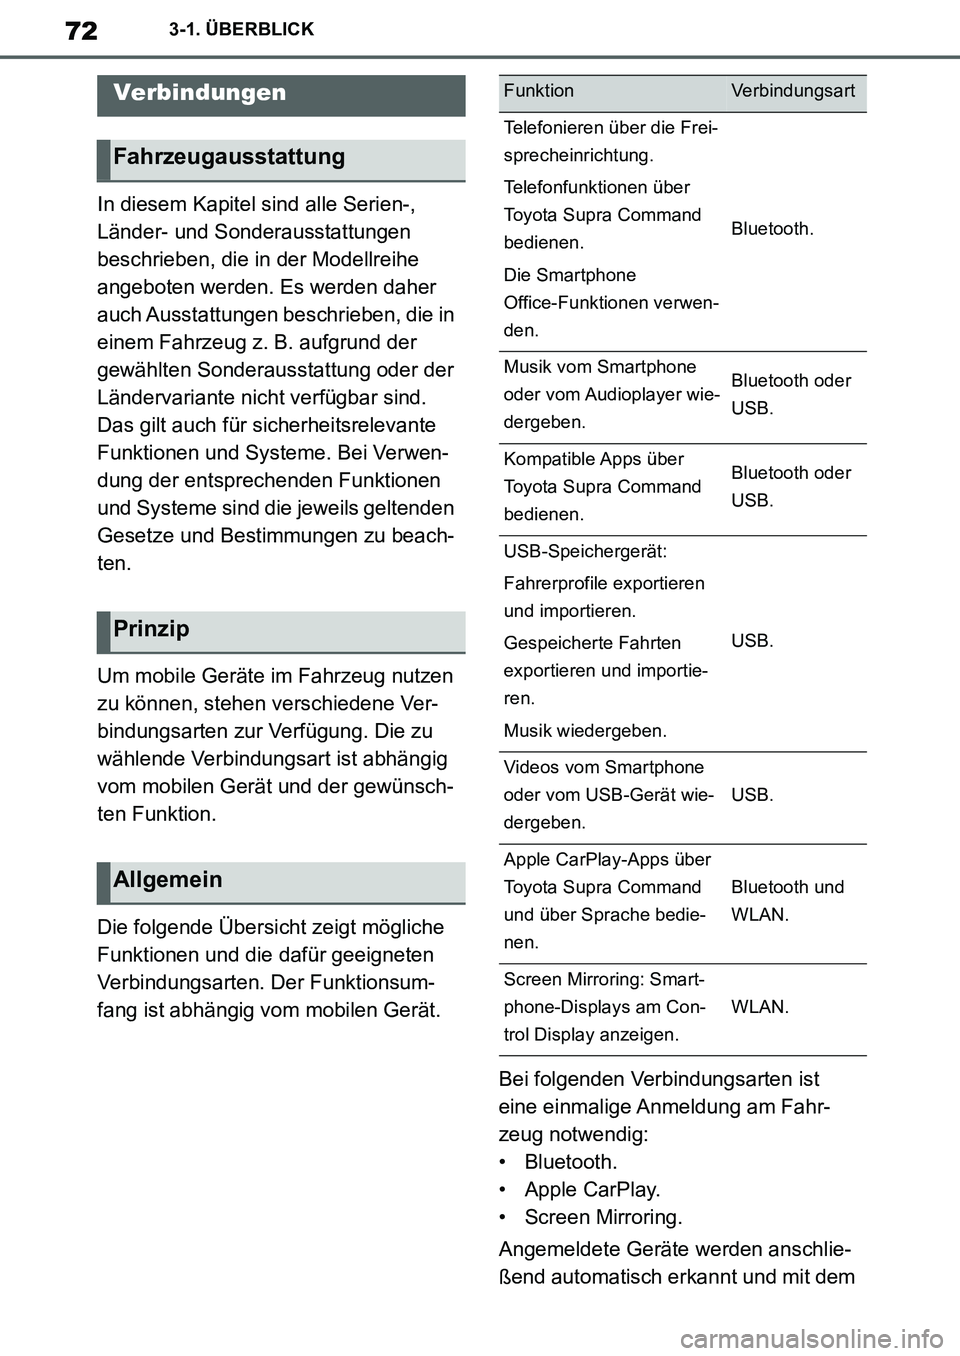 TOYOTA SUPRA 2020  Betriebsanleitungen (in German) 72
Supra Owners Manual_EM
3-1. ÜBERBLICK
In diesem Kapitel sind alle Serien-, 
Länder- und Sonderausstattungen 
beschrieben, die in der Modellreihe 
angeboten werden. Es werden daher 
auch Ausstatt